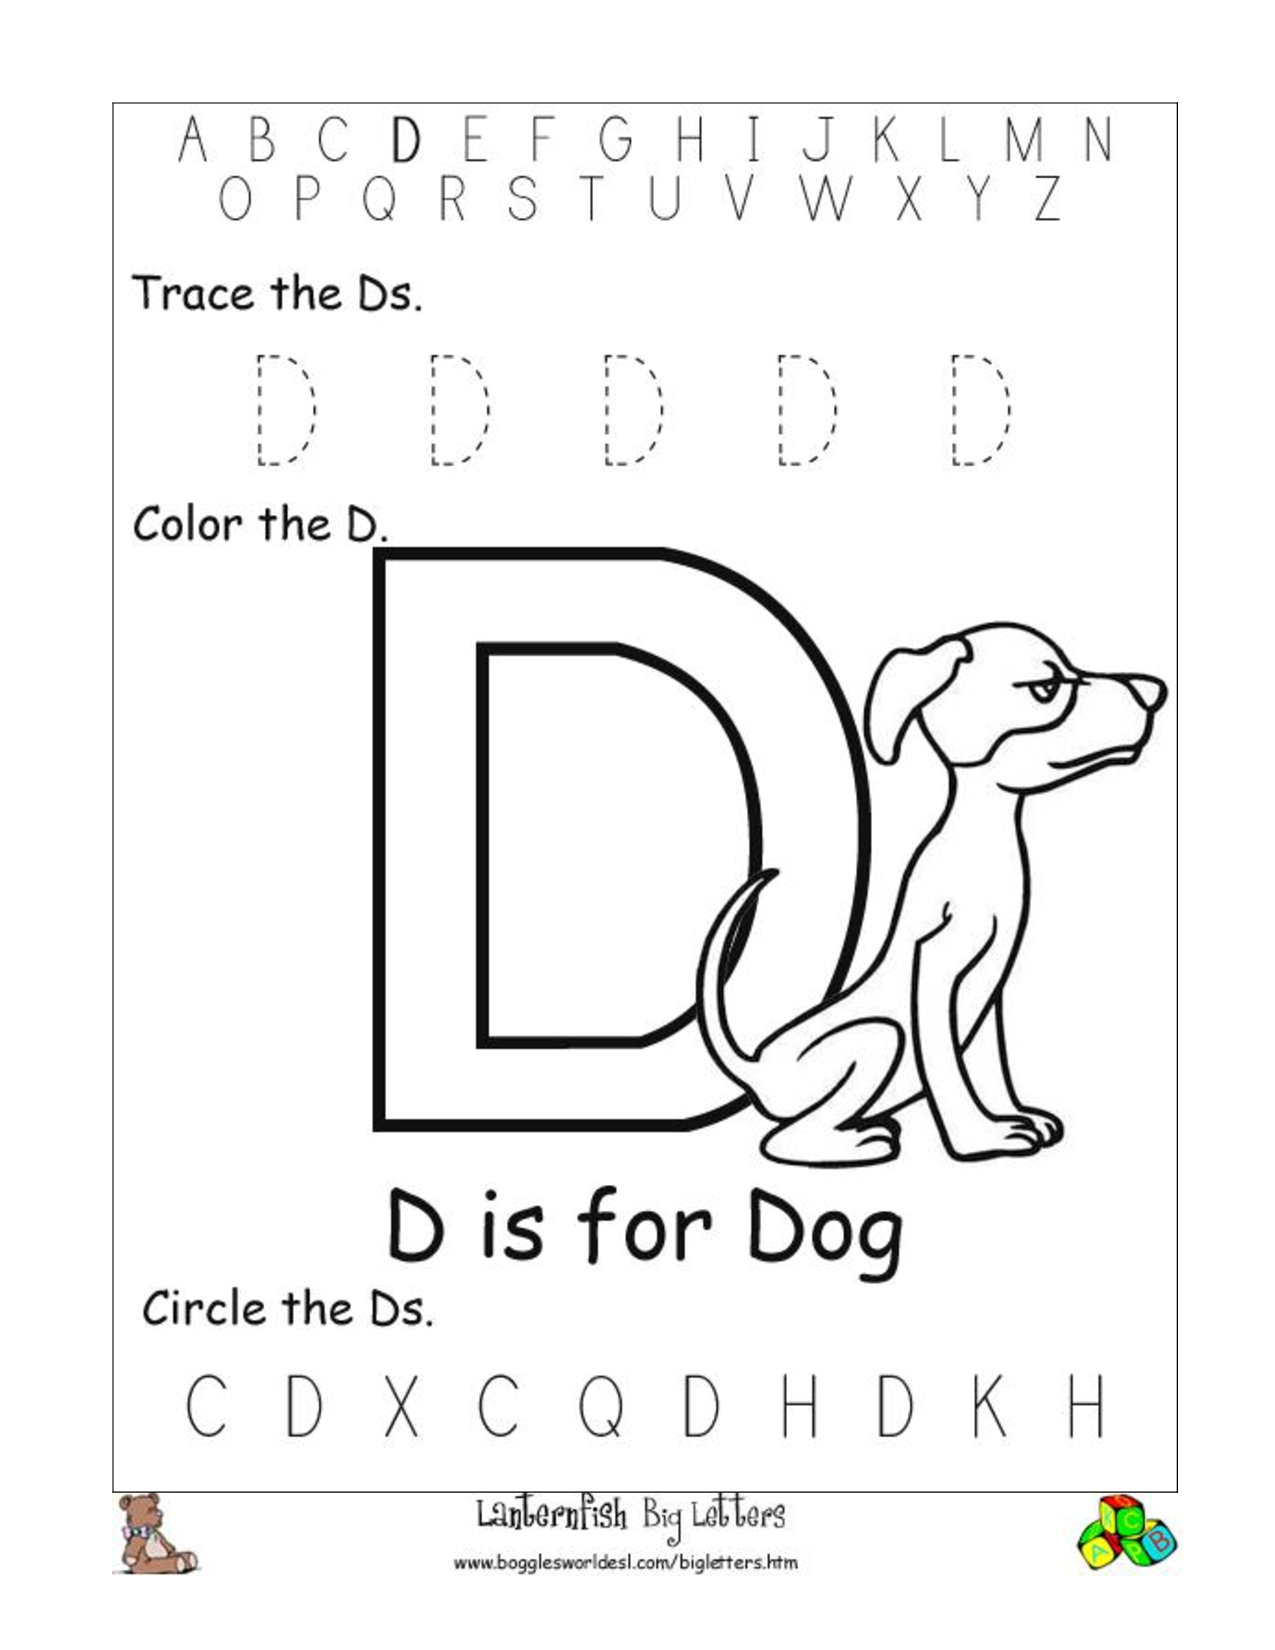 6 Best Images of Free Printable Letter D Worksheets - Alphabet Letter D